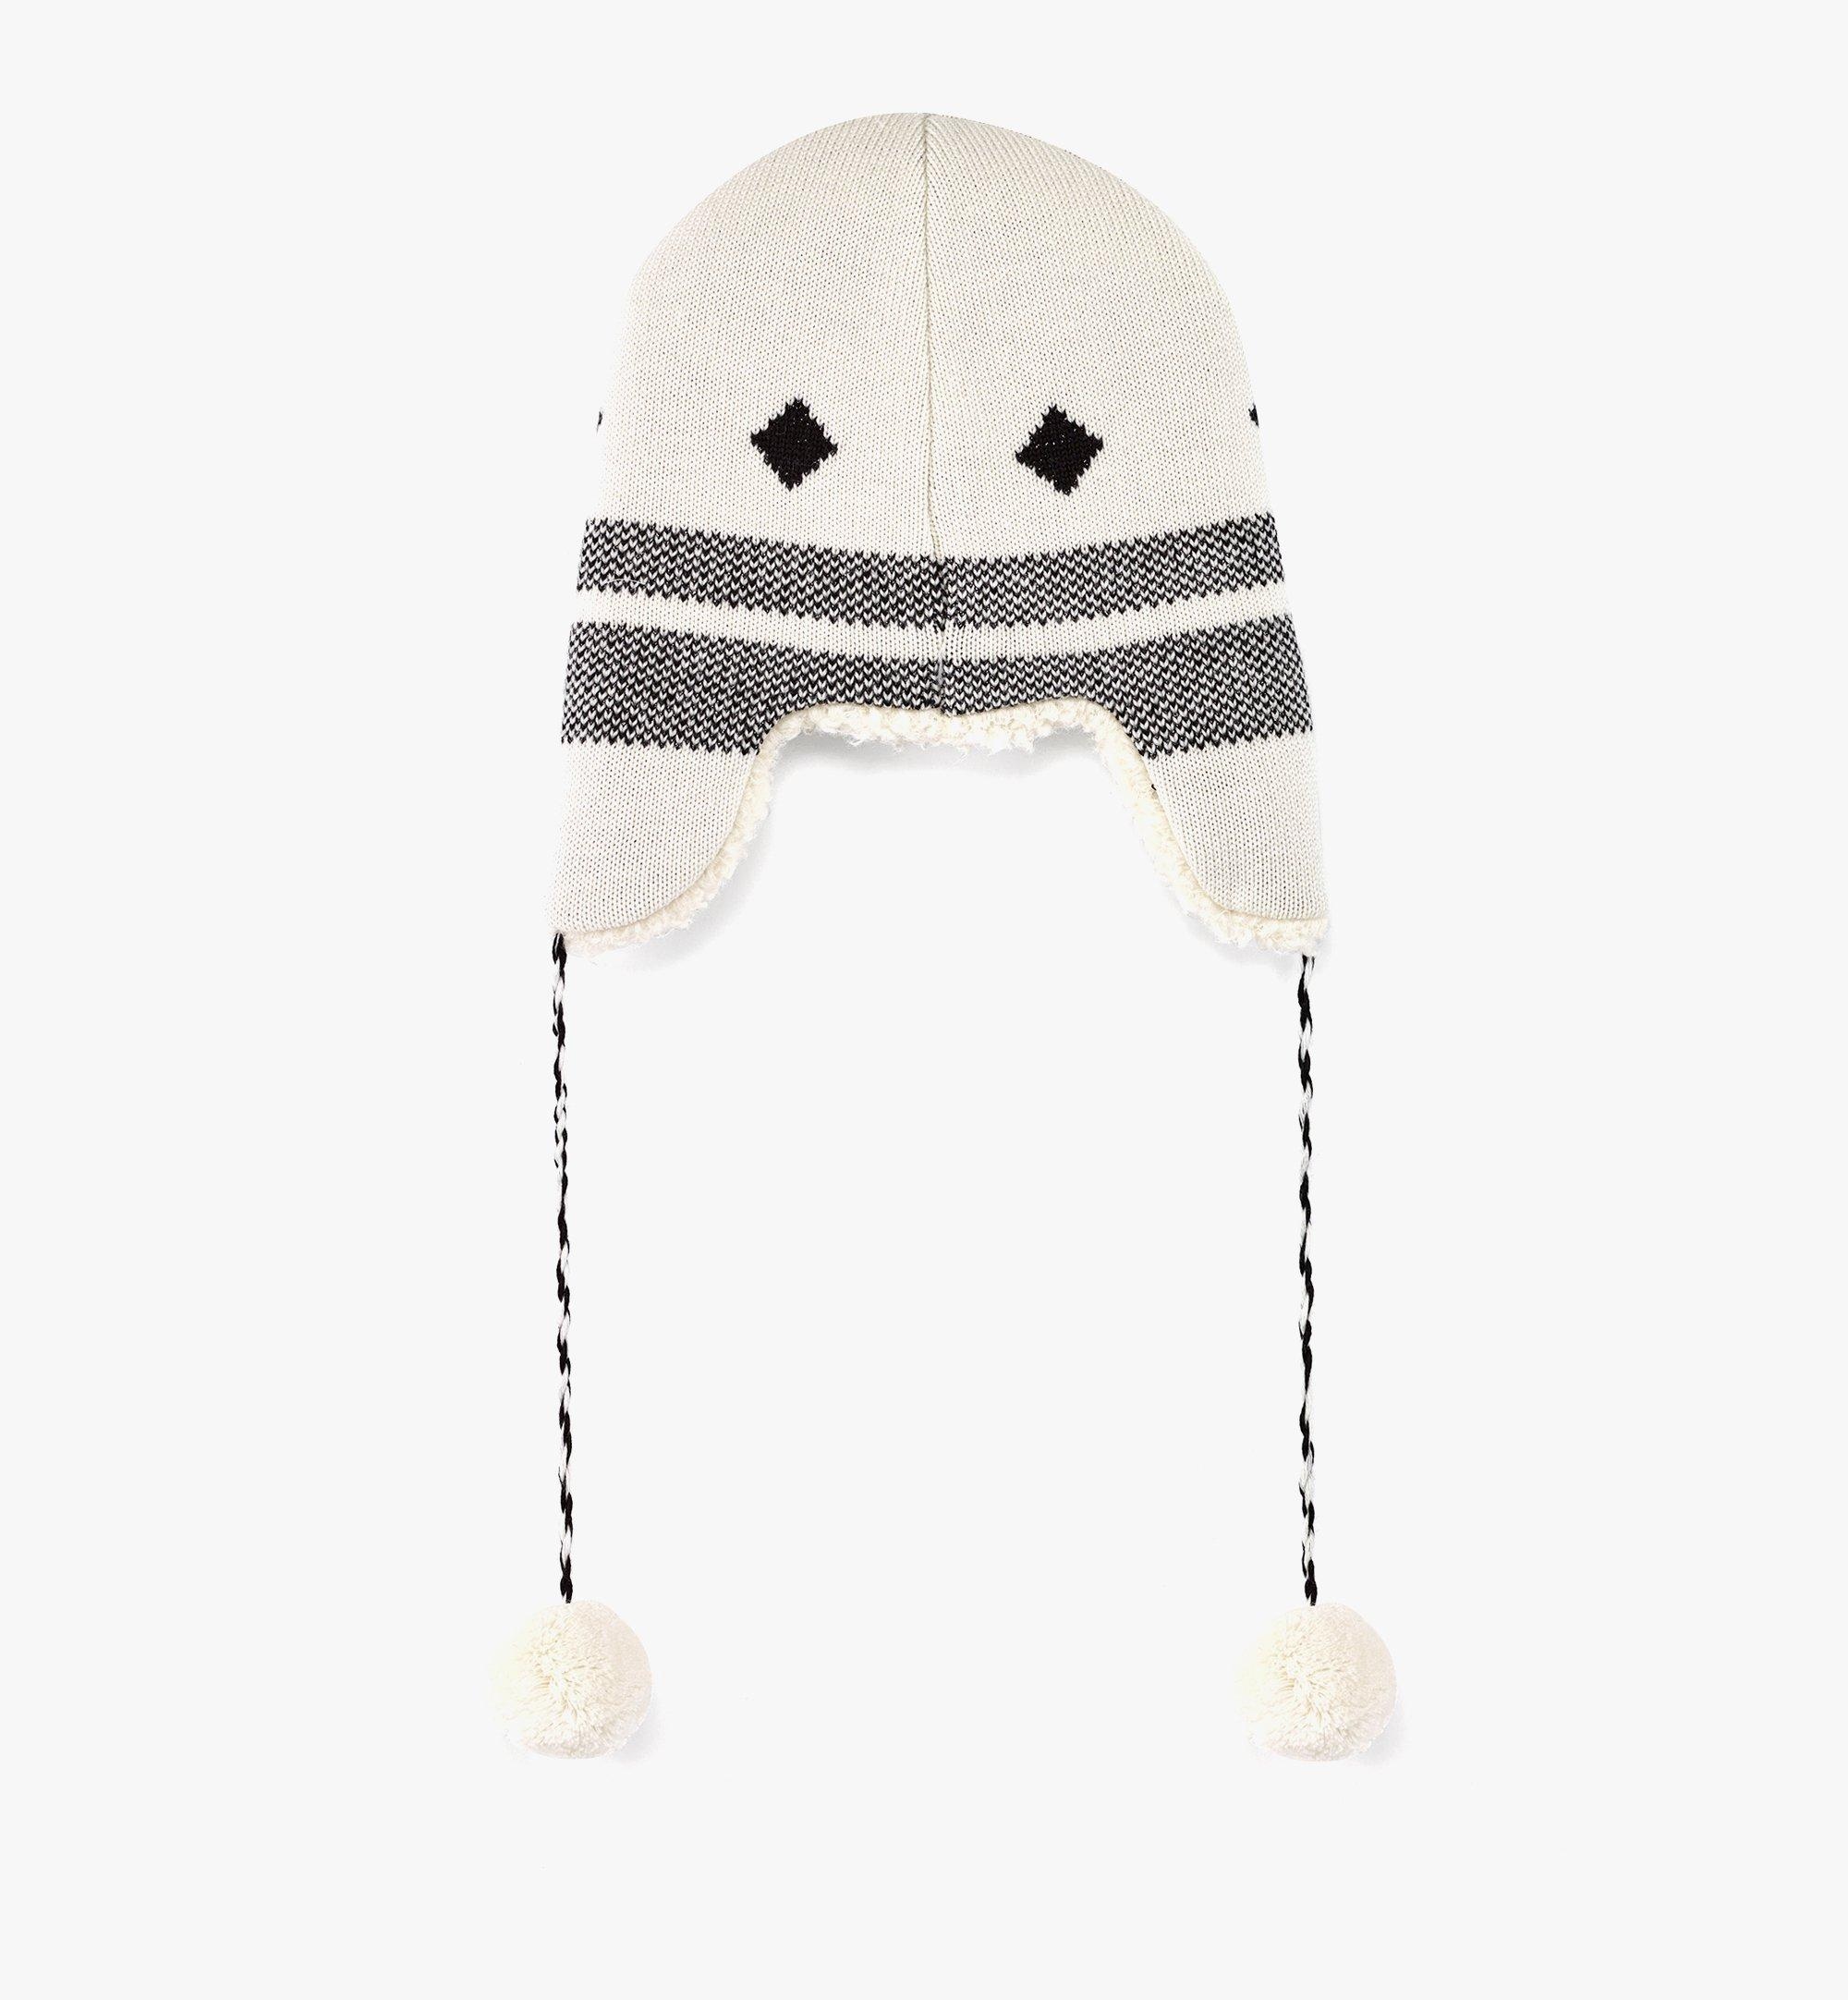 Reversible Shapka Hat in Après Ski Wool - 3